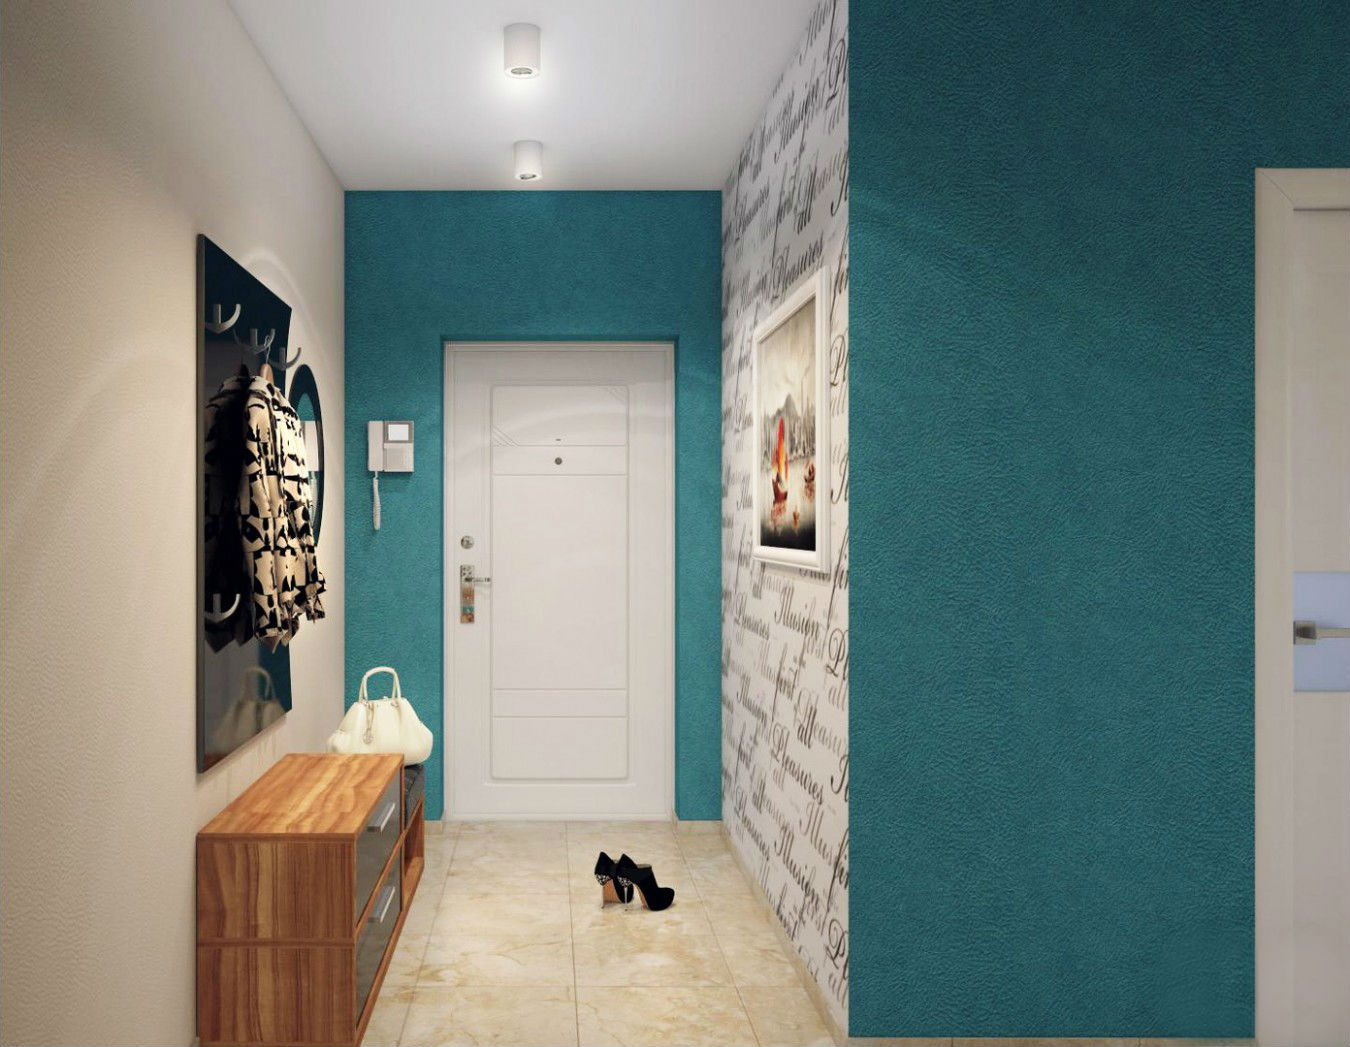 design of the corridor in the apartment interior ideas